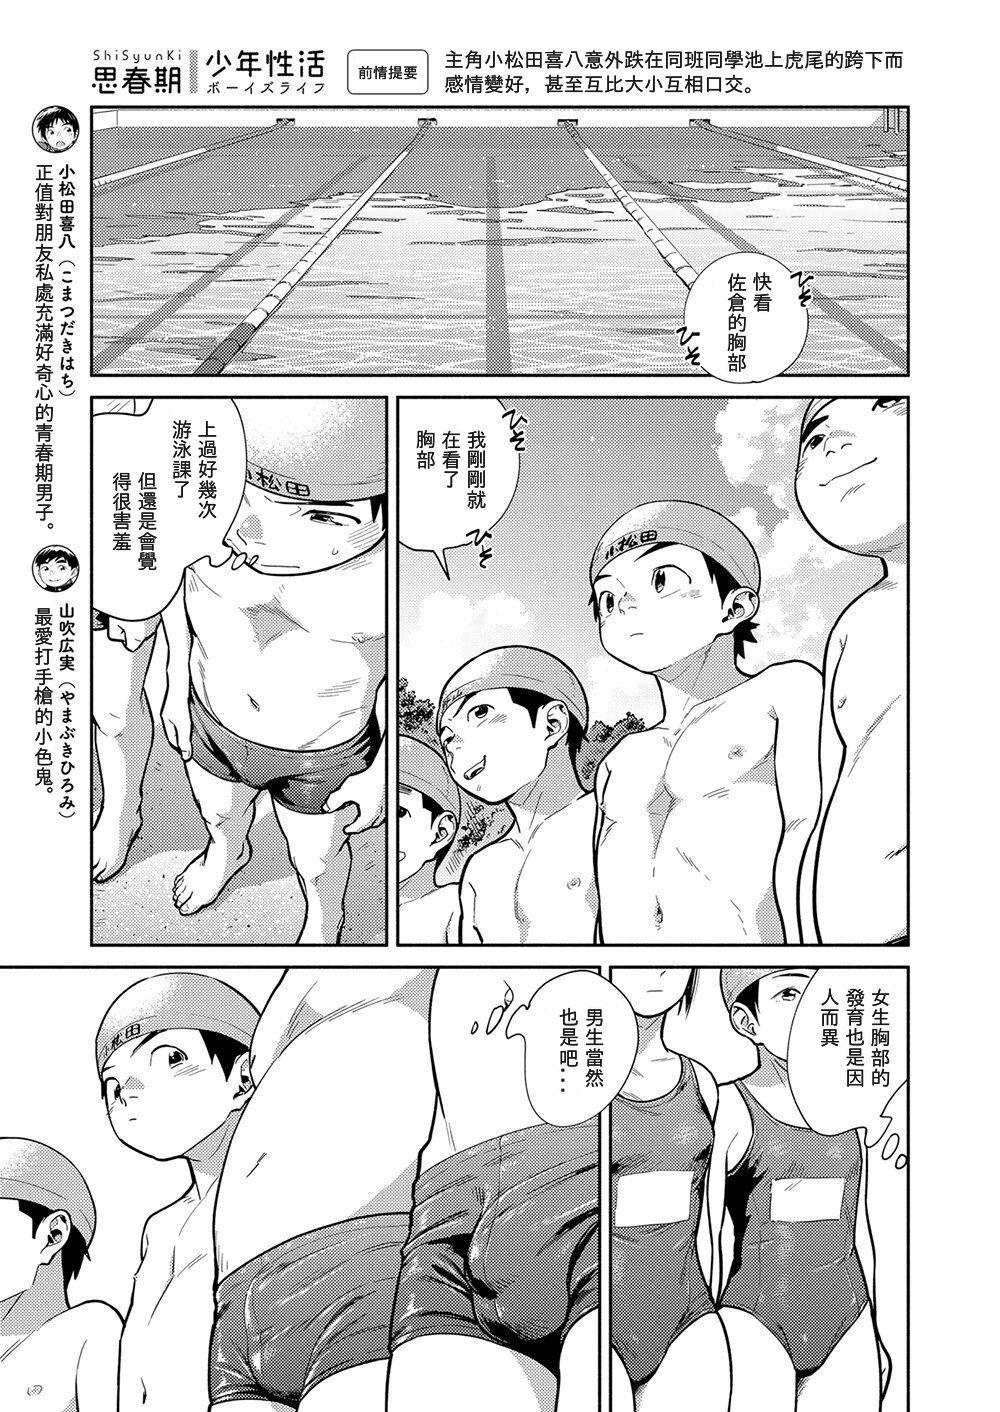 Police Manga Shounen Zoom Vol. 29 - Original Mom - Page 7